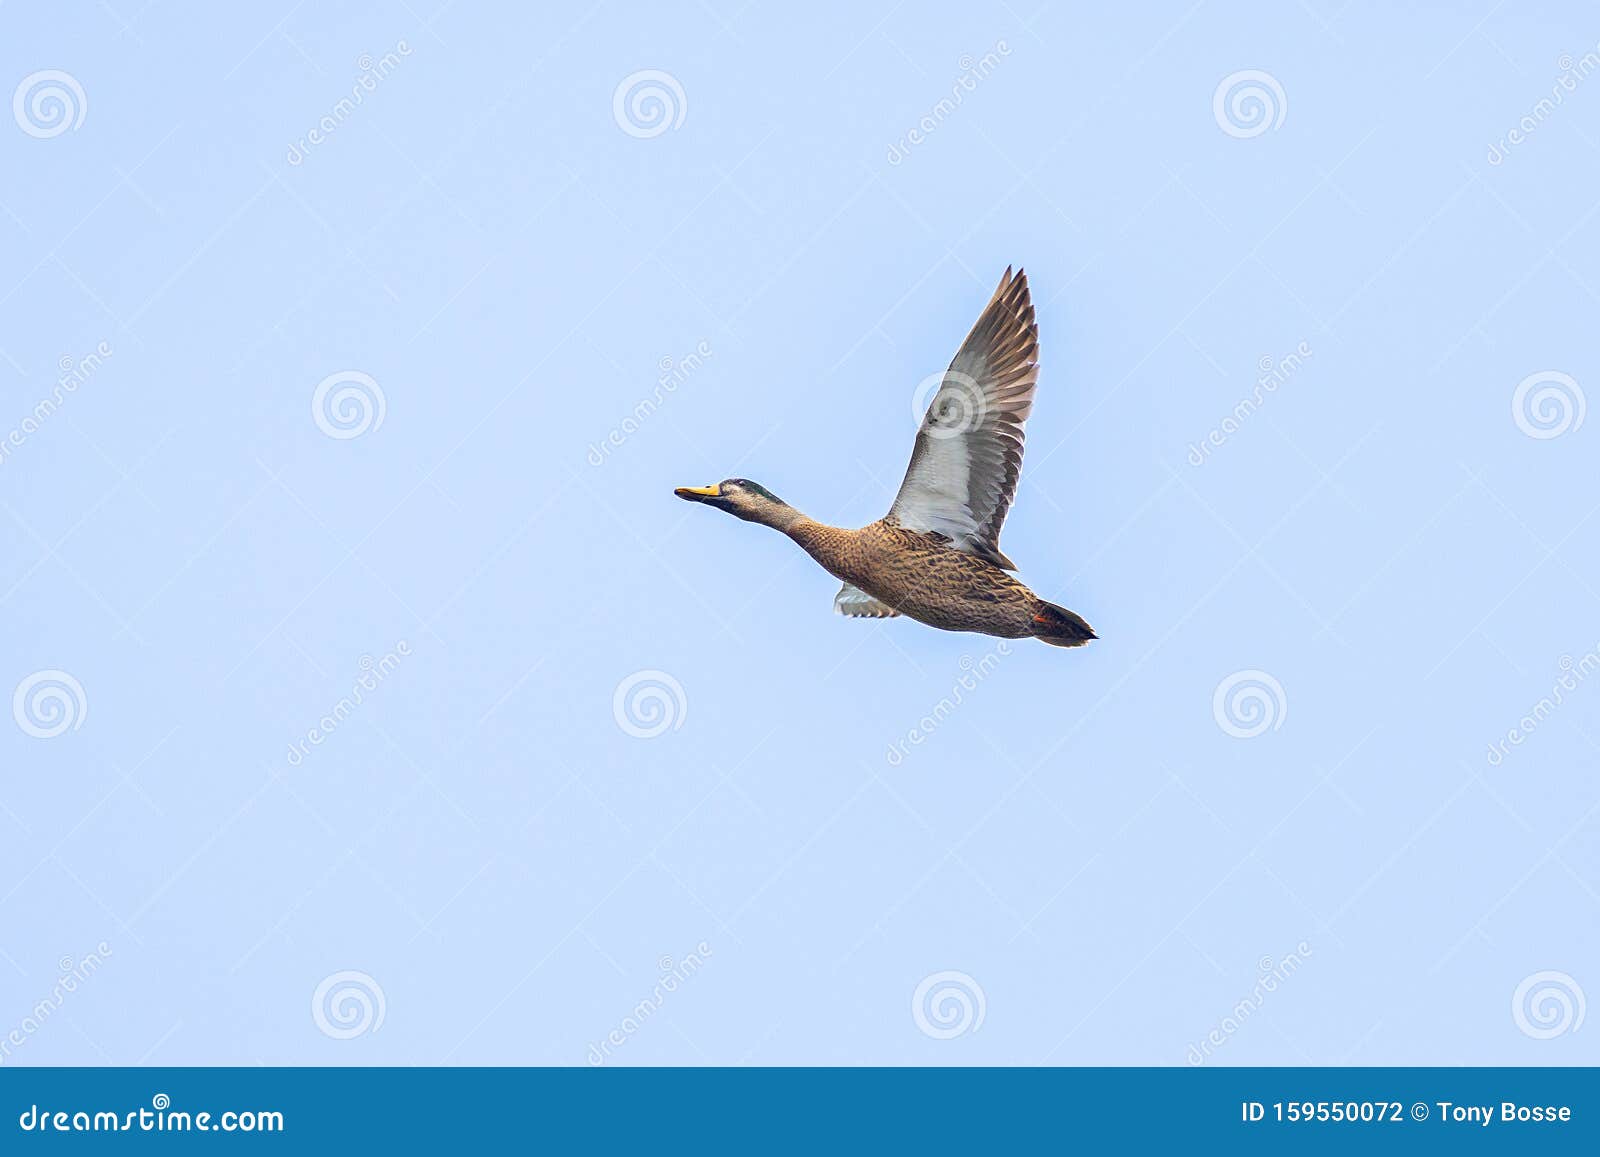 male mallard duck in flight, full wingspan over blue sky